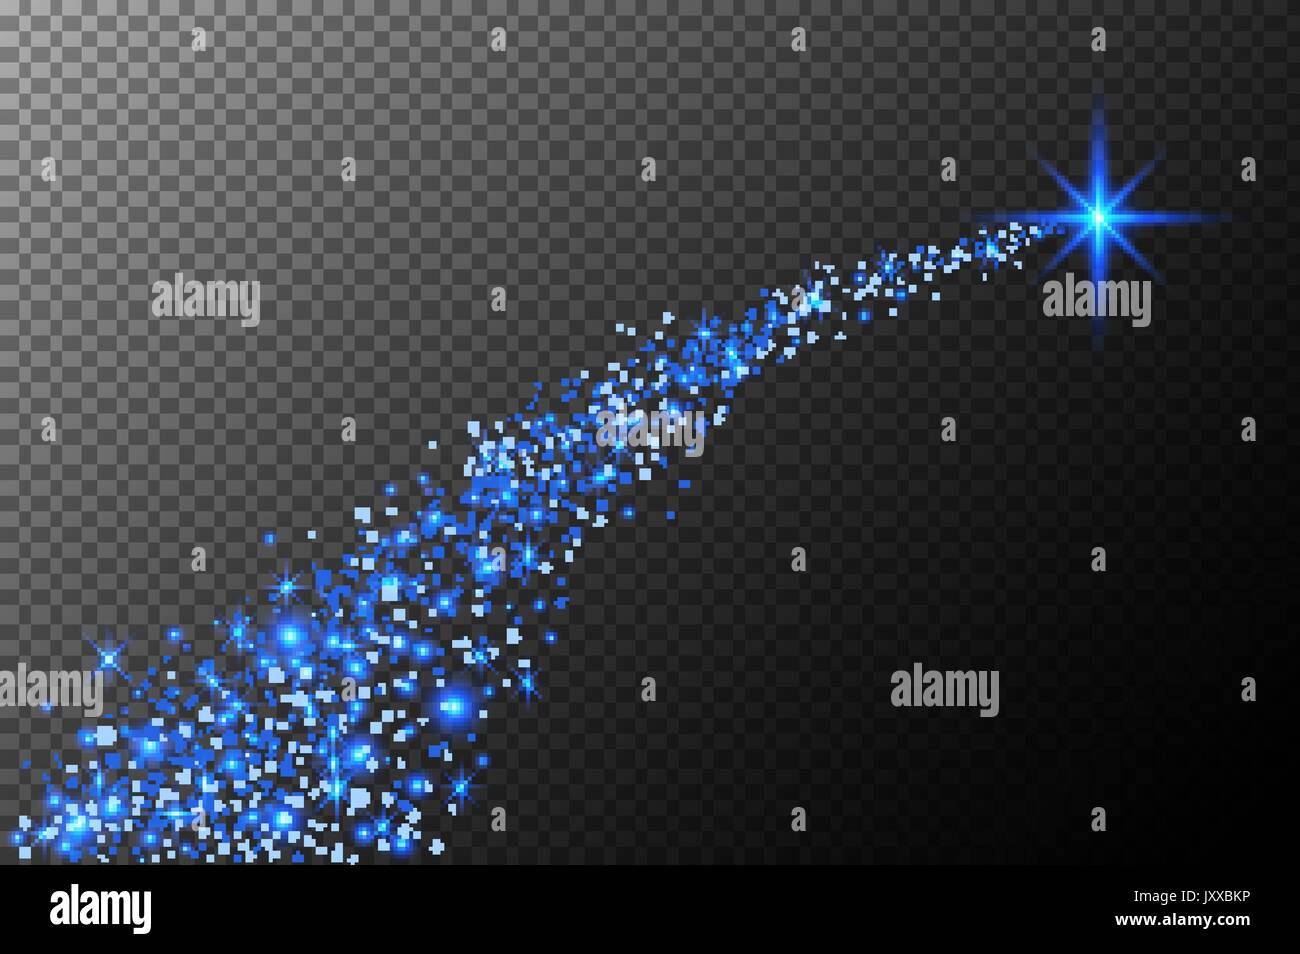 Stella Di Natale Luminosa.Abstract Luminose Stelle Cadenti Stella Di Natale Shooting Star Con Stelle Scintillanti Trail Su Sfondo Blu Scuro Meteoroid Comet Asteroide Backdro Immagine E Vettoriale Alamy